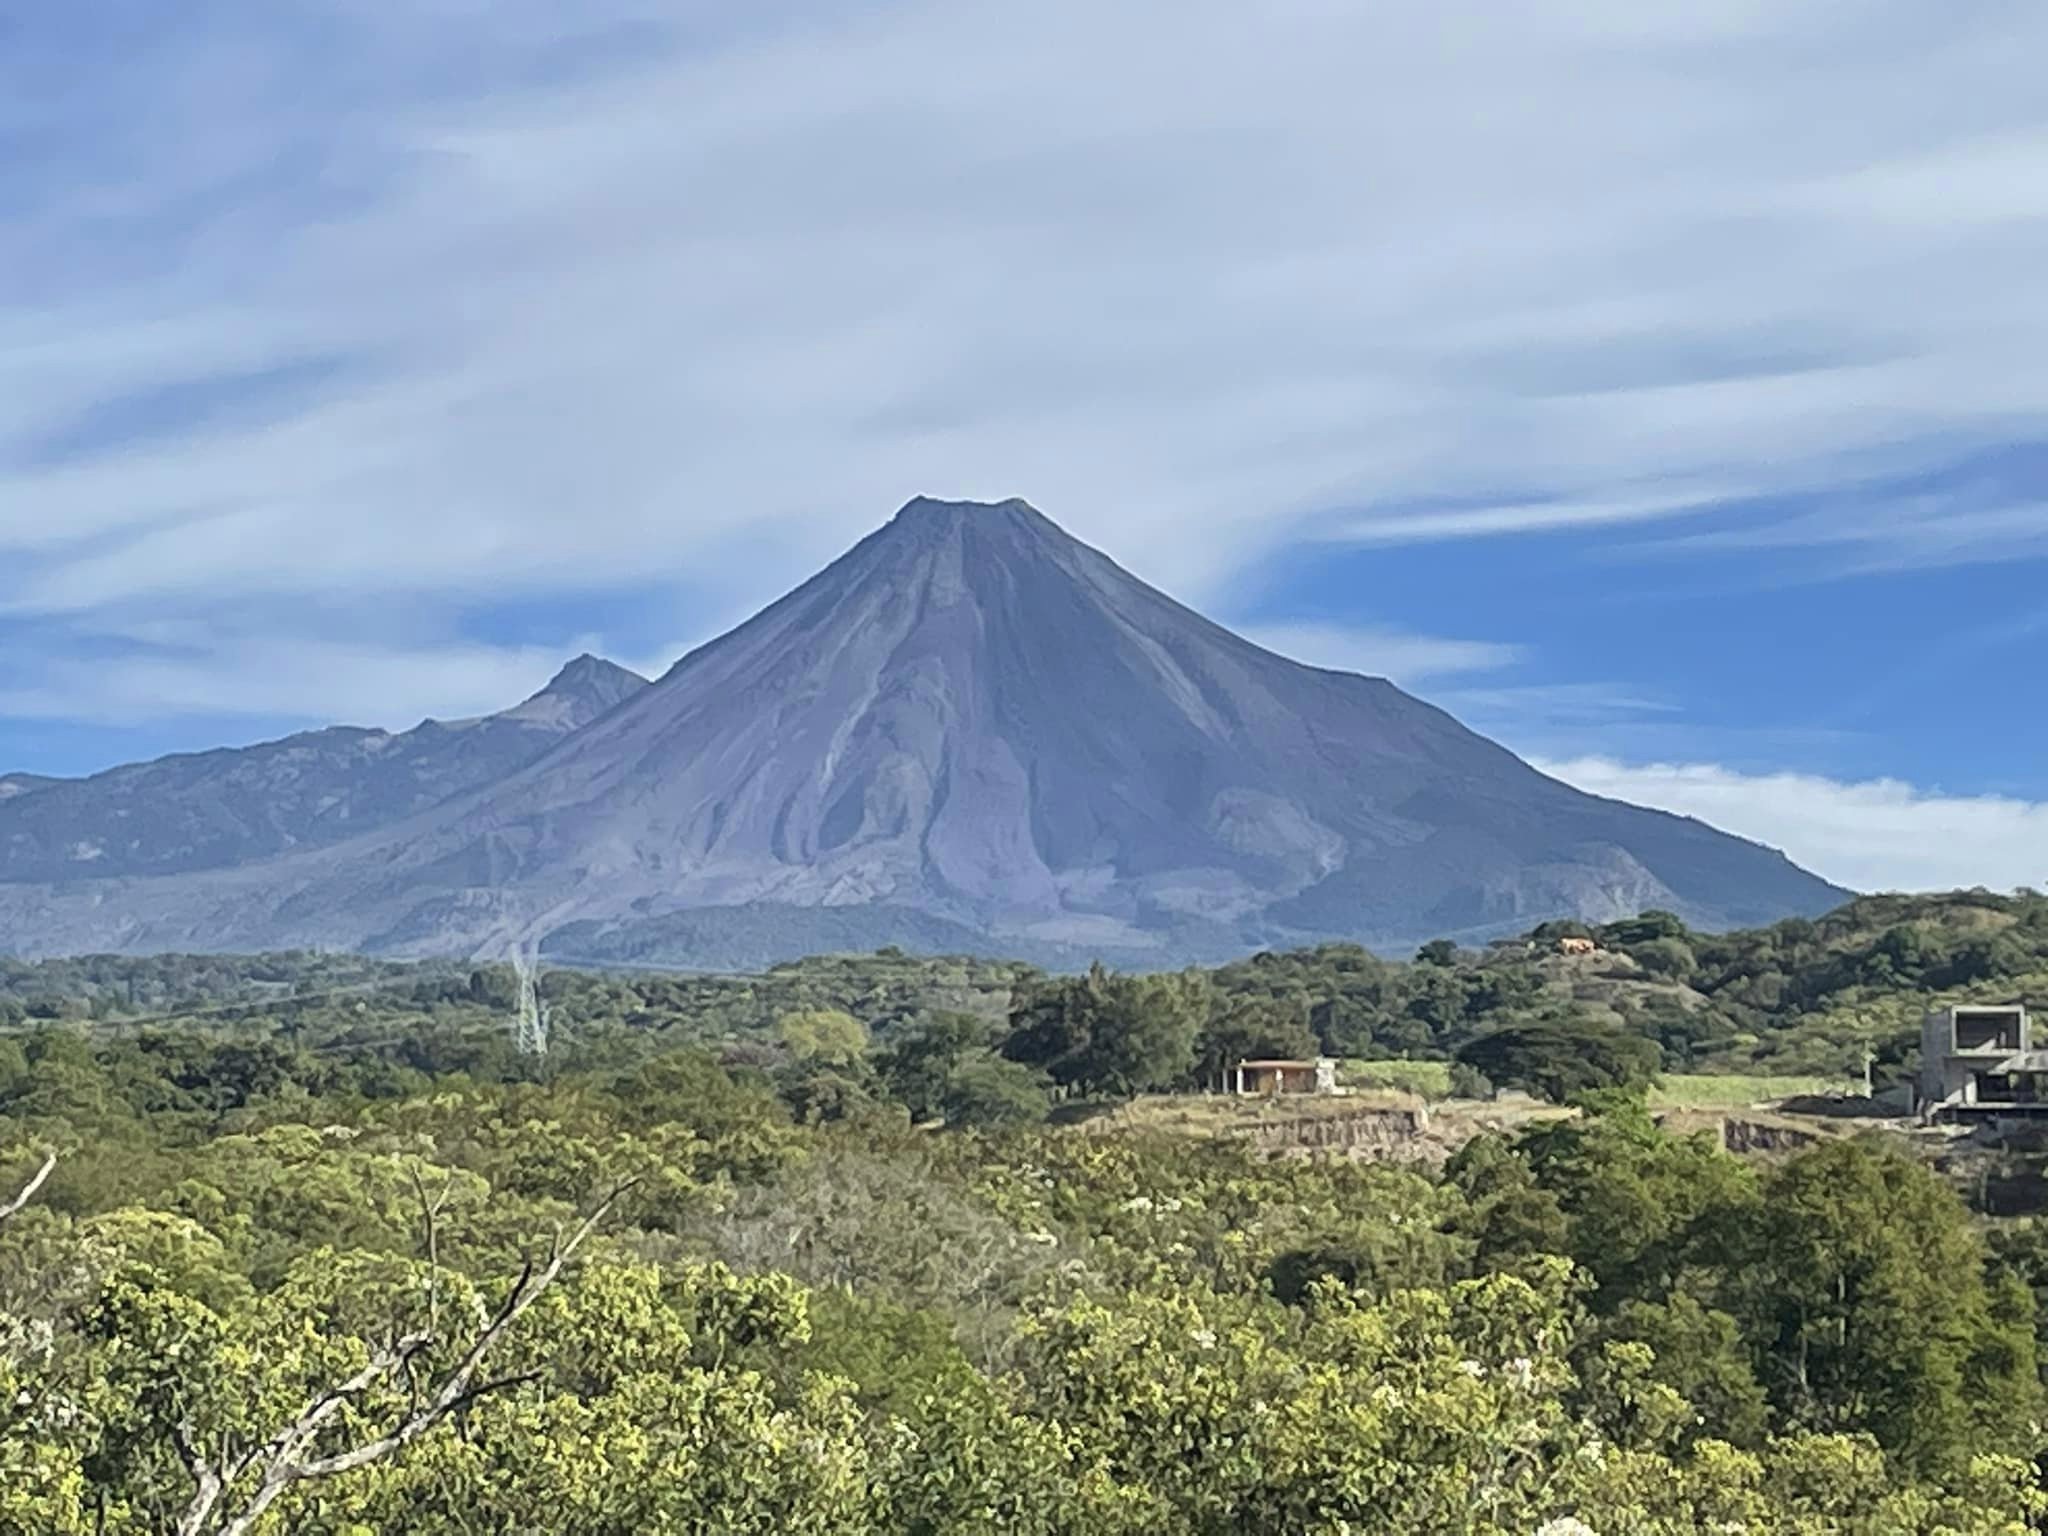 Imagen del Volcán de Colima. Tomada del Facebook: Centro Universitario de Estudios Vulcanológicos.